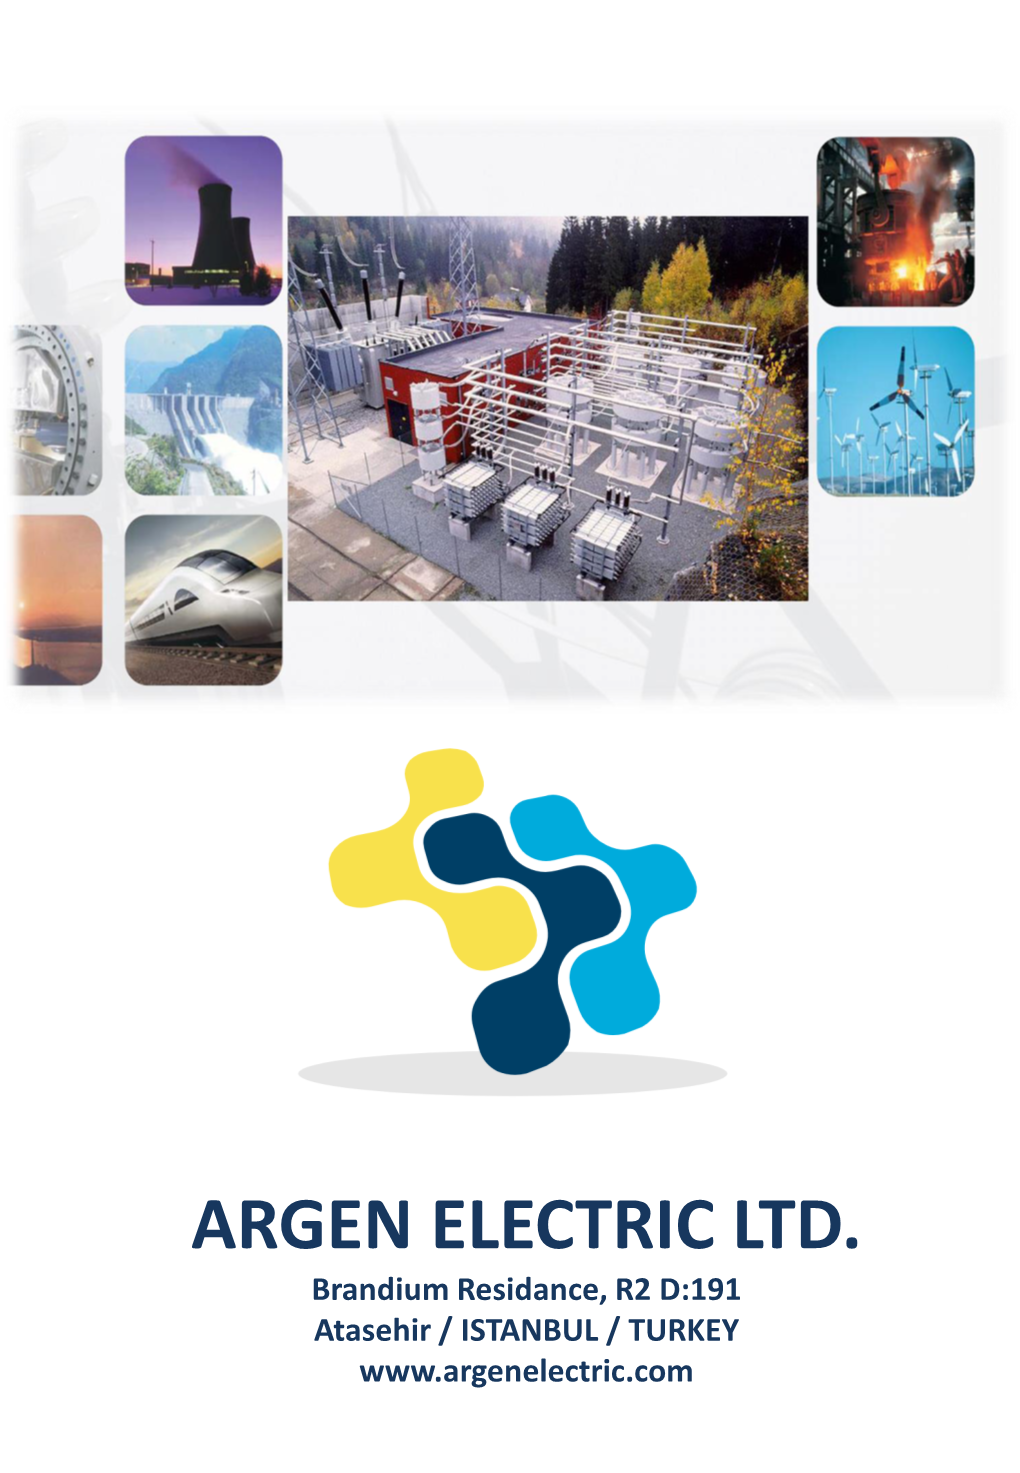 Argen Electric Ltd